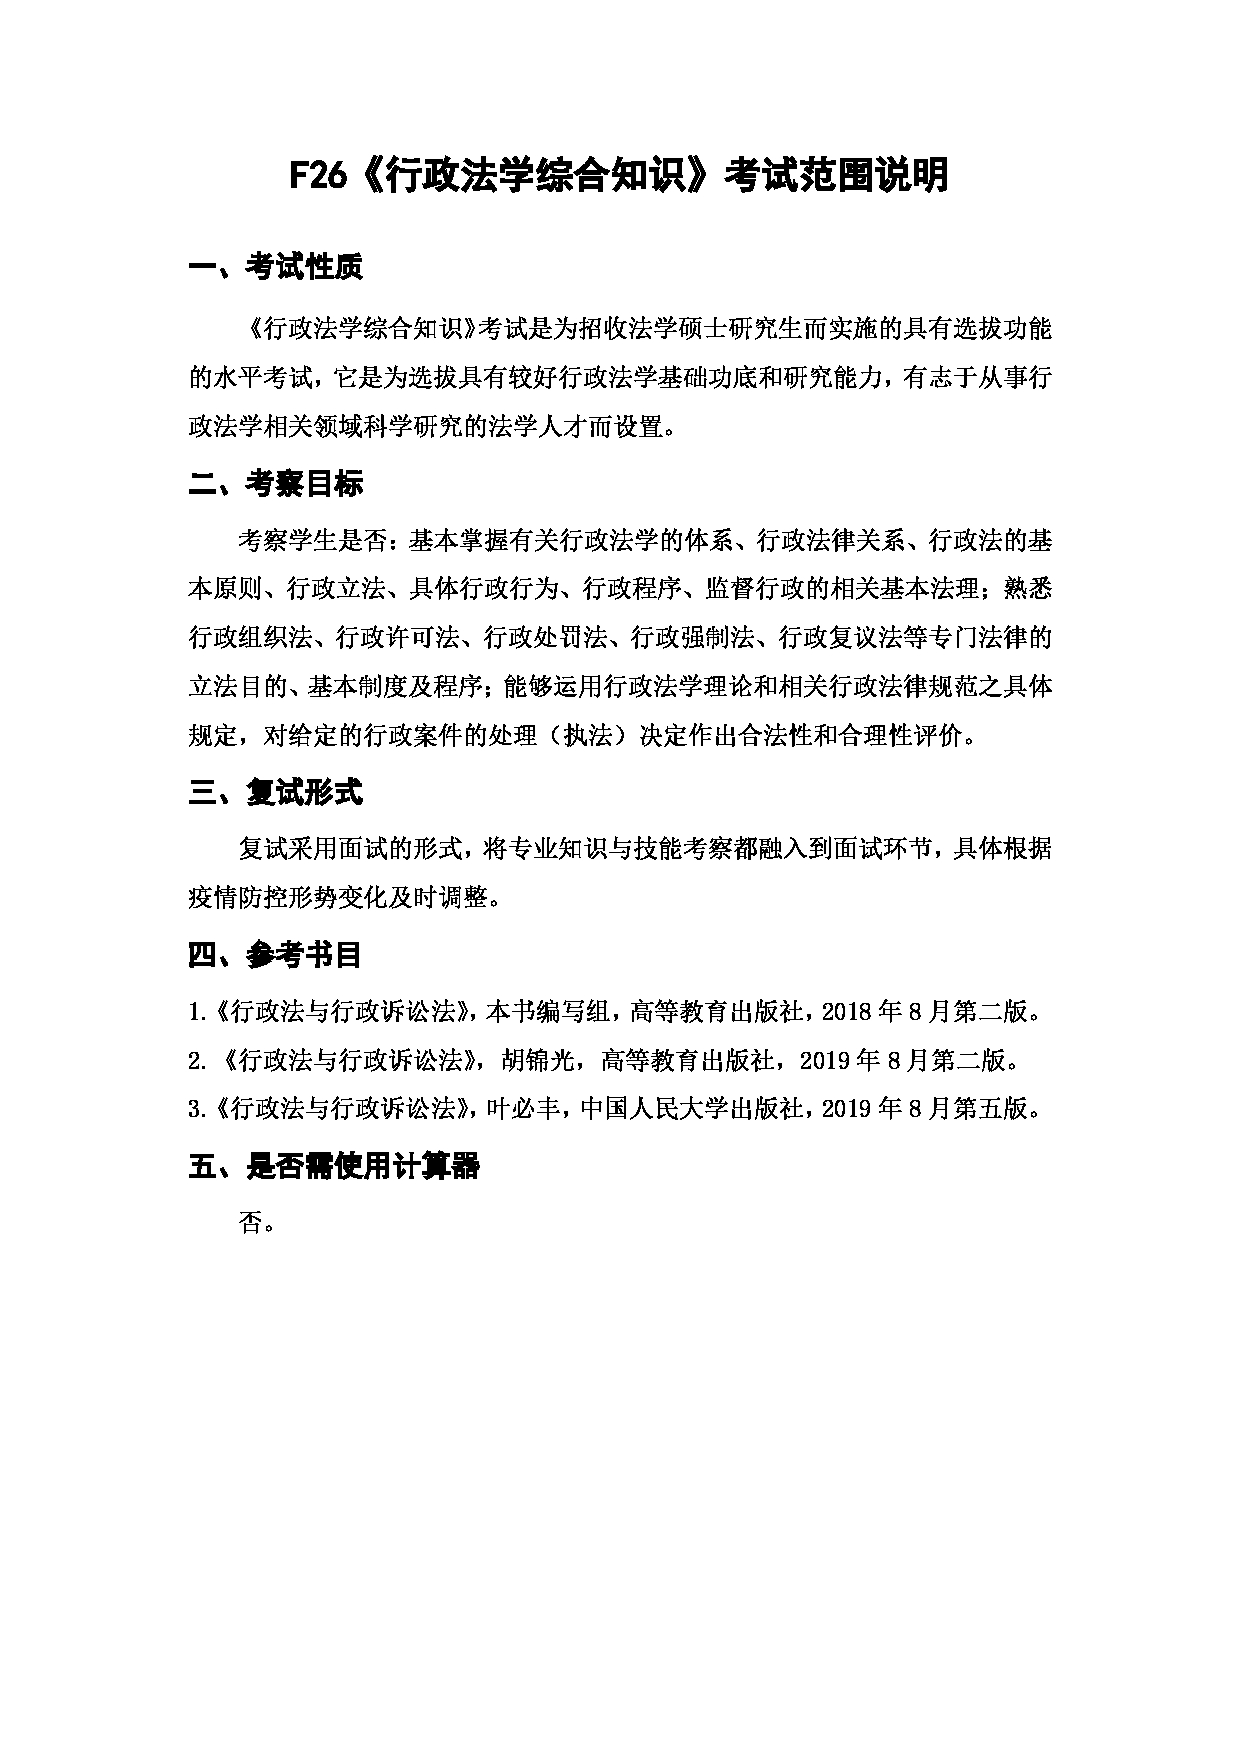 上海海洋大学2023年考研自命题科目 F26《行政法学综合知识》 考试范围第1页